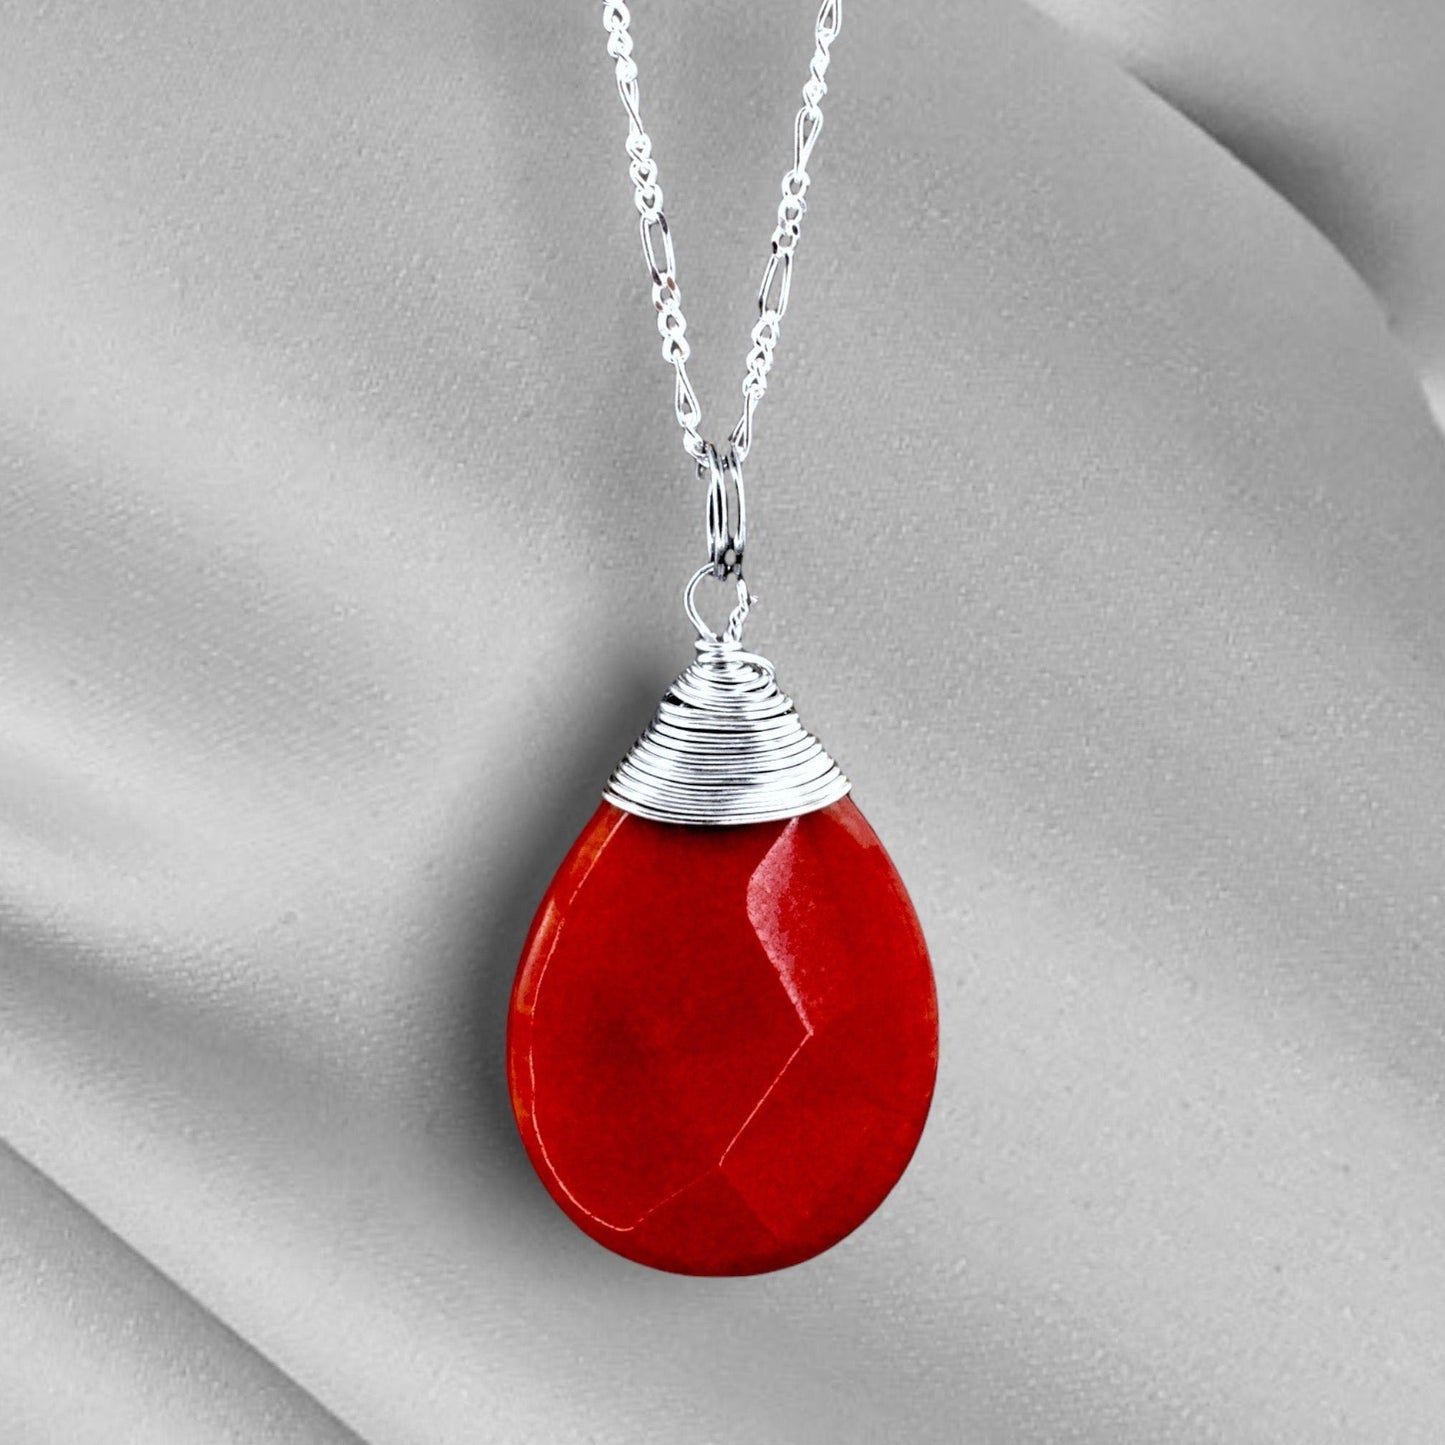 Jade drop silver kedja - 925 sterling granatäpple kristall röd pärla halsband - K925-42